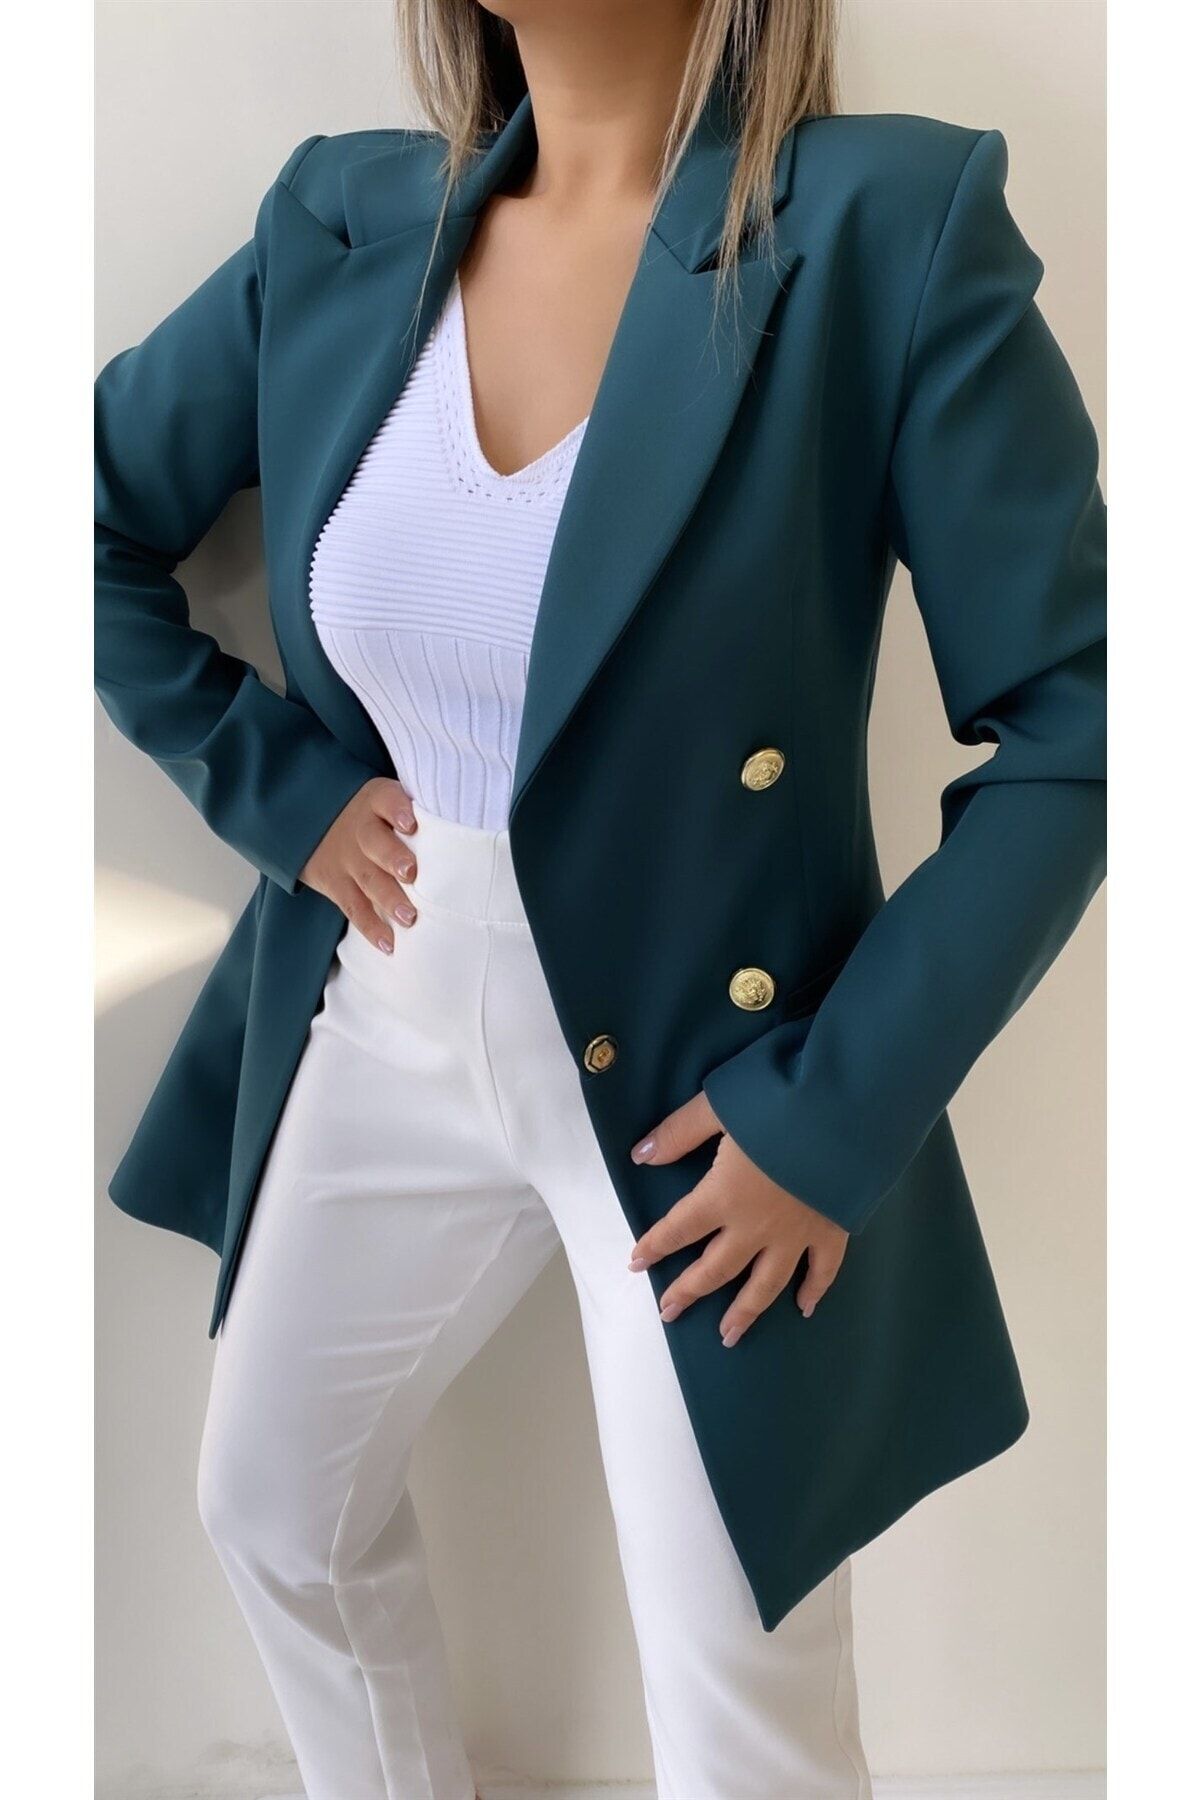 SEDA FİDAN Kadın Uzun Gold Düğmeli Blazer Ceket Koyu Zümrüt Yeşil